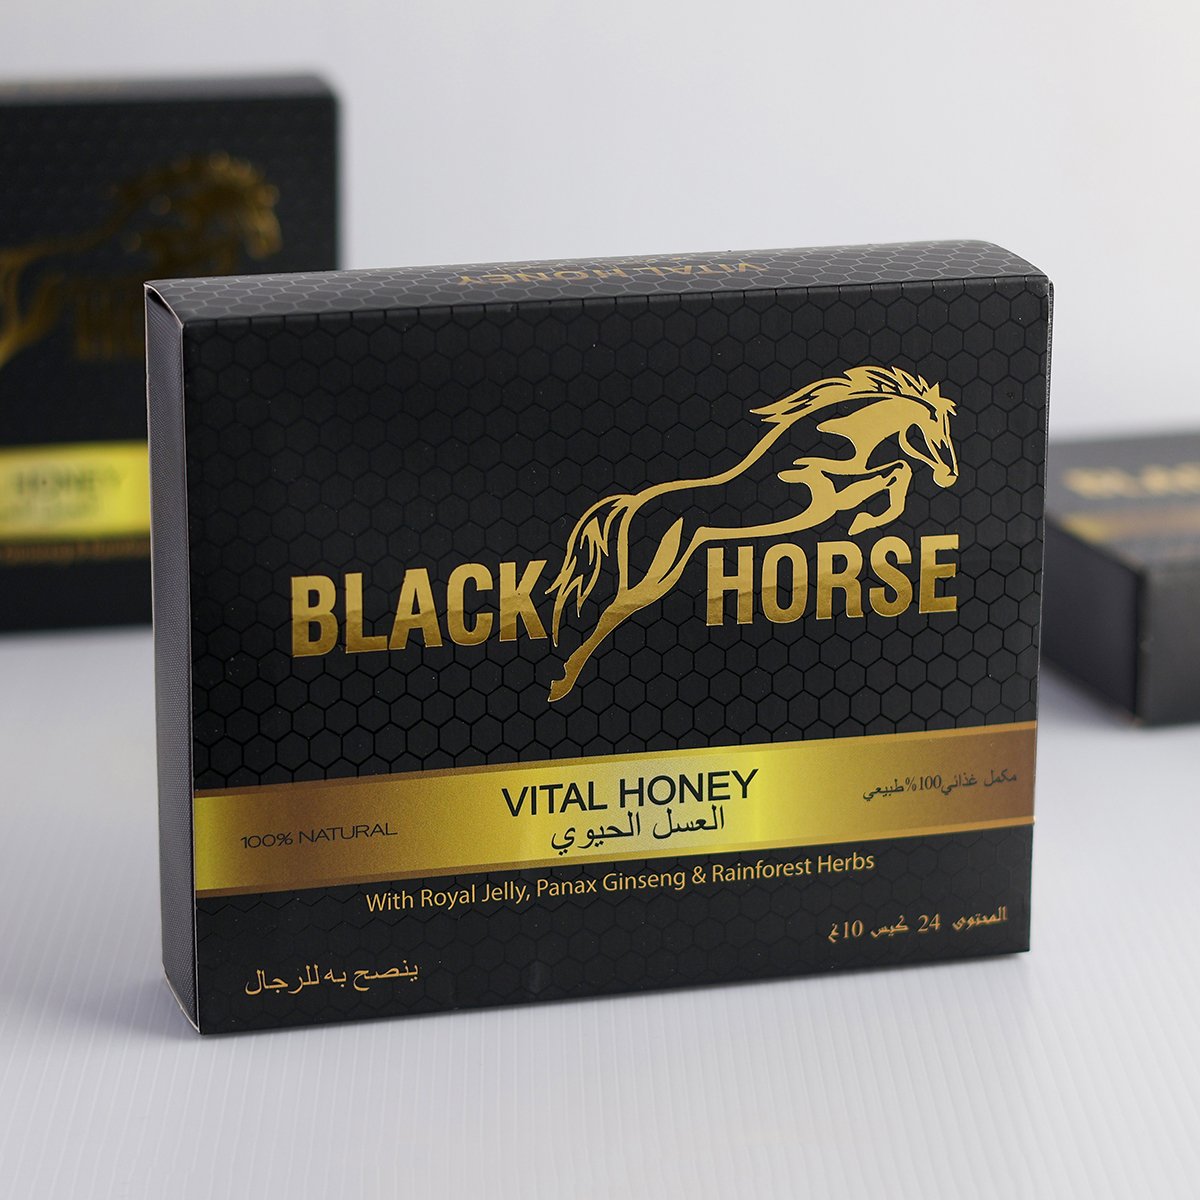 BLACK HORSE Vital Honey Malaysia